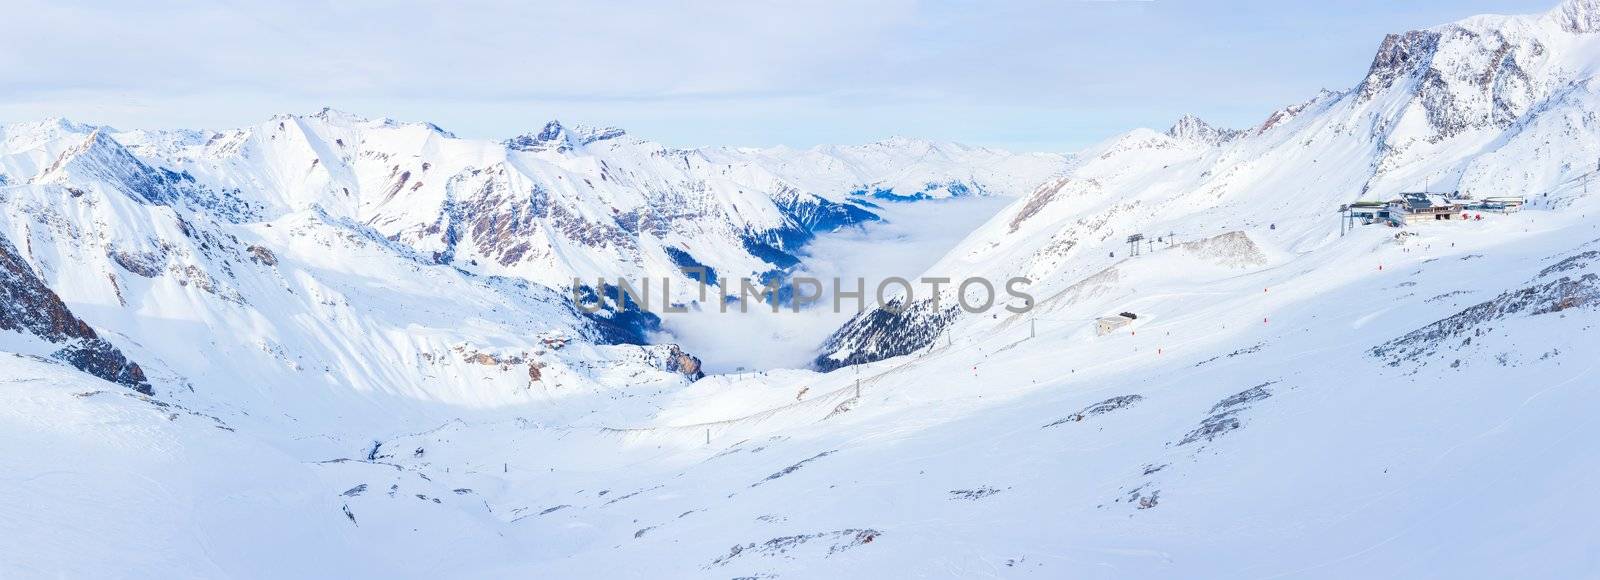 The Alpine skiing resort in Austria Zillertal. Panorama